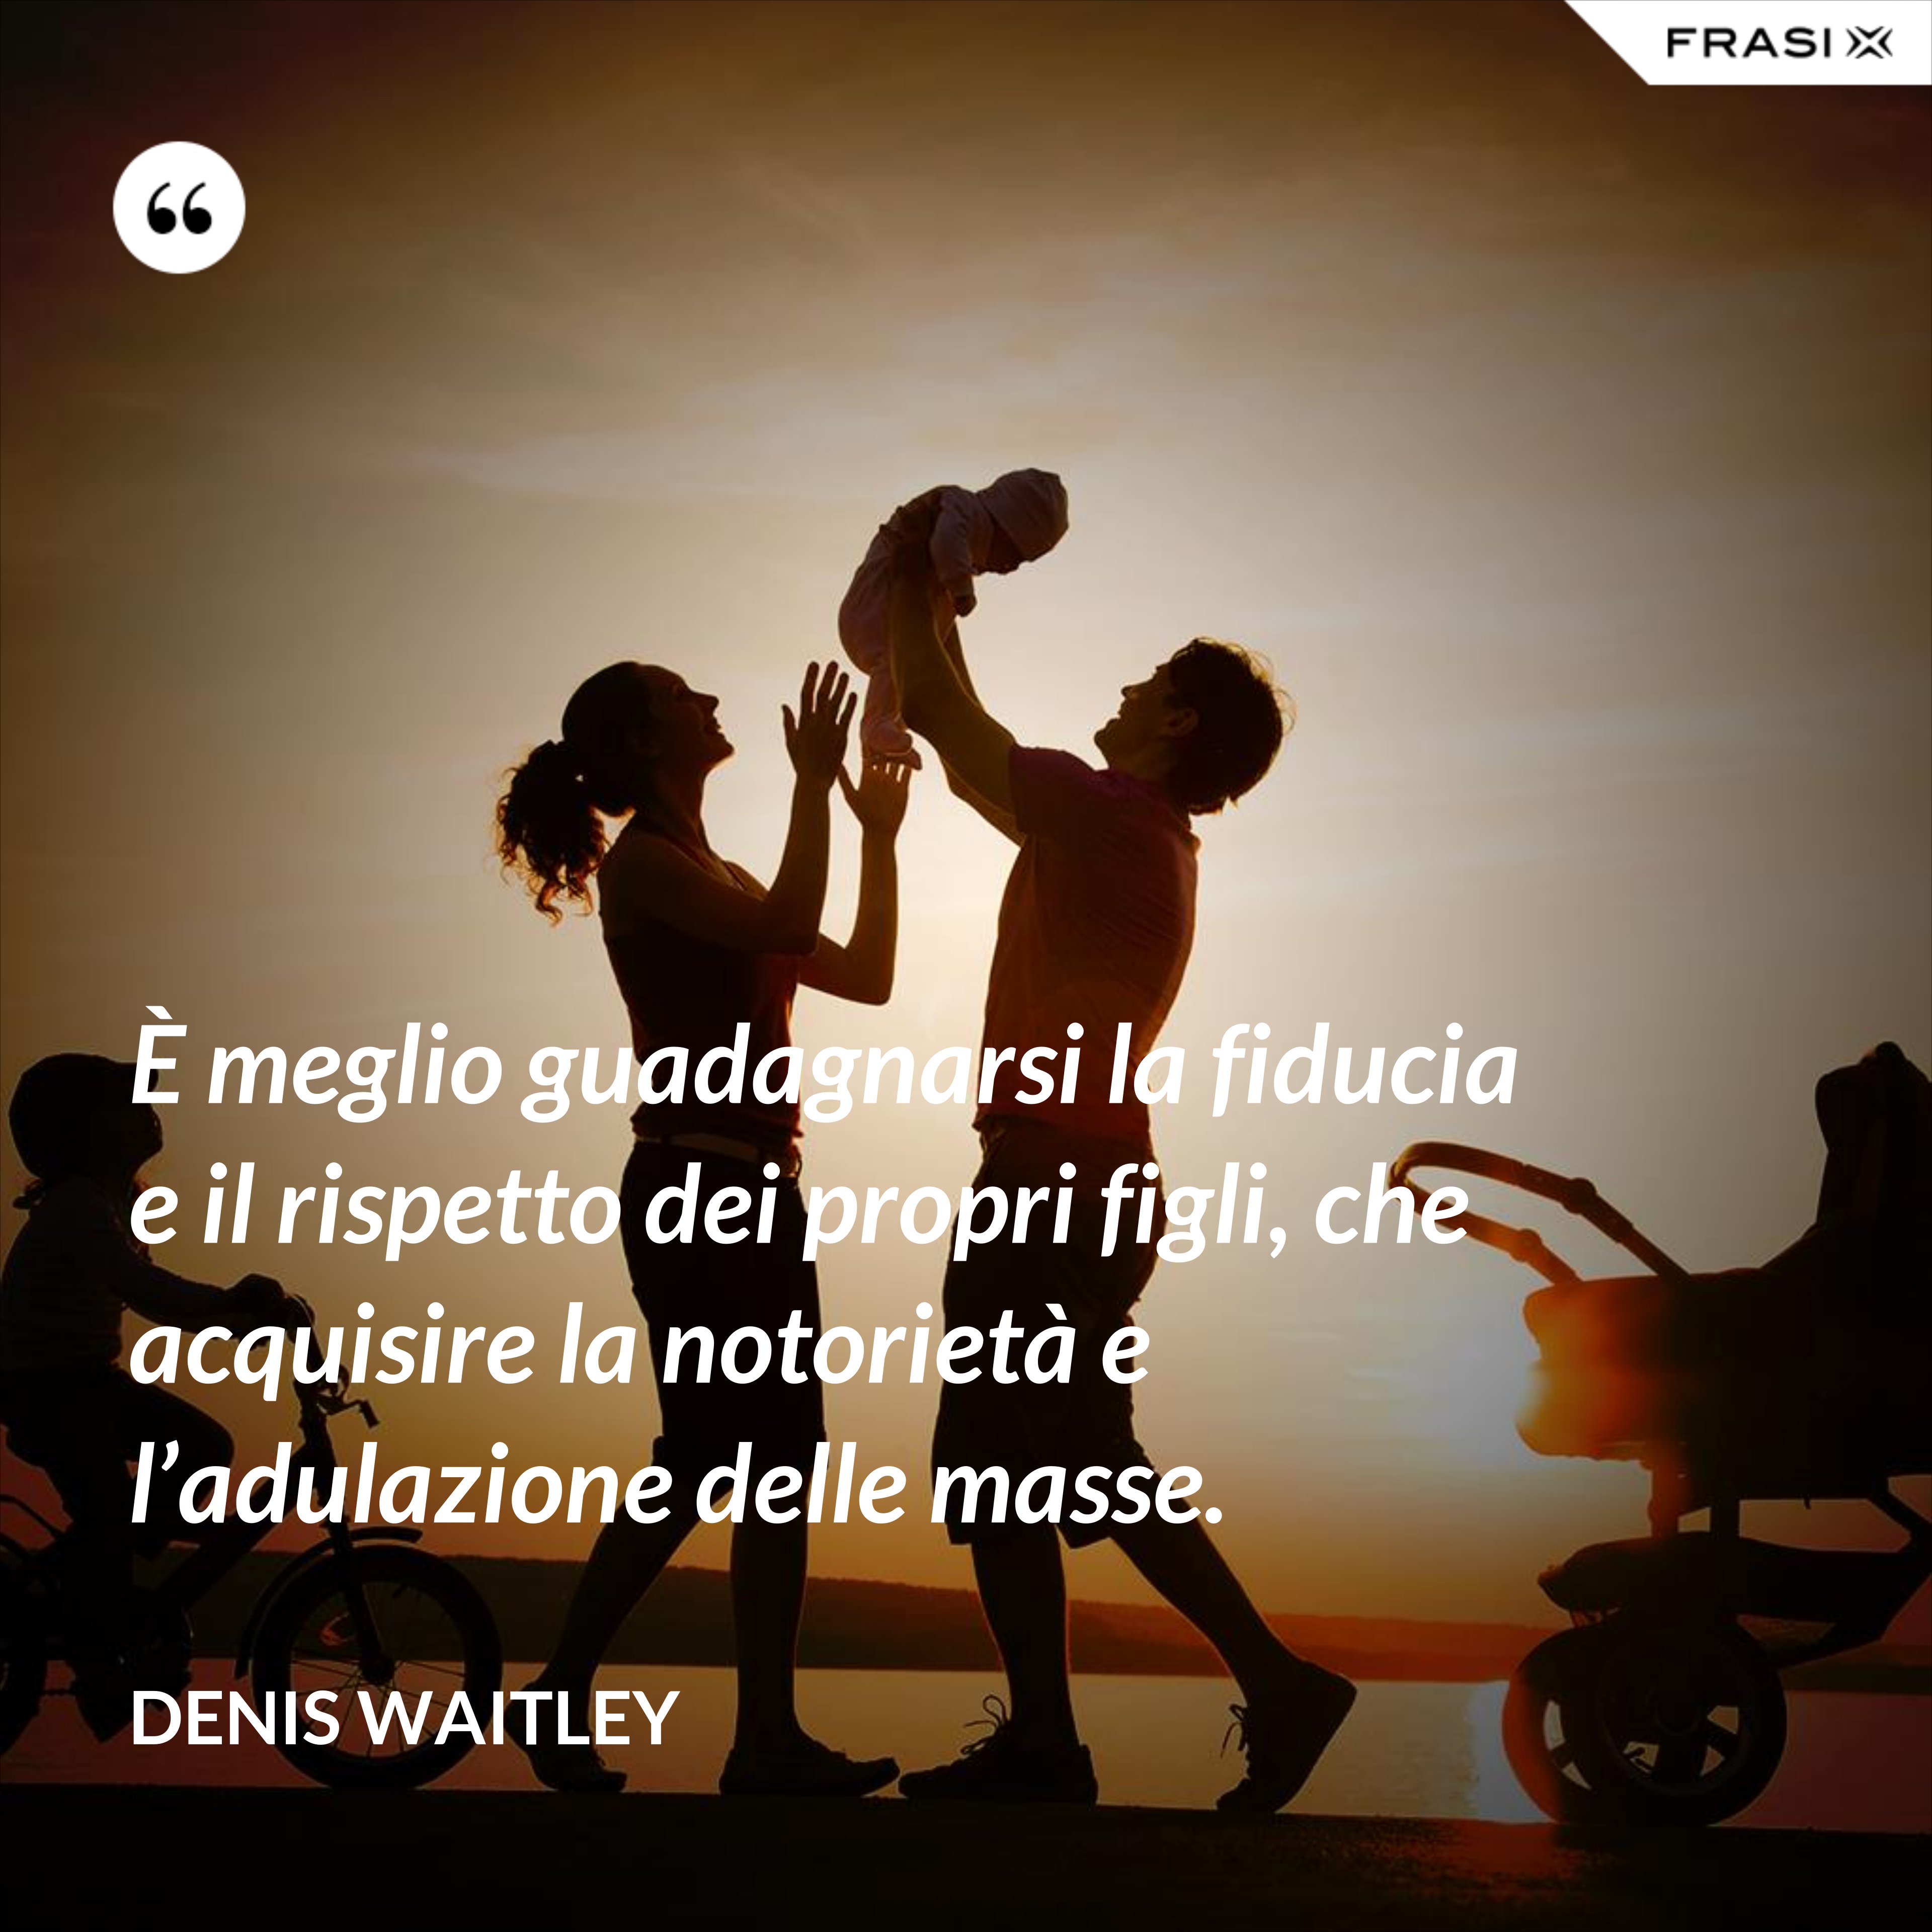 È meglio guadagnarsi la fiducia e il rispetto dei propri figli, che acquisire la notorietà e l’adulazione delle masse. - Denis Waitley